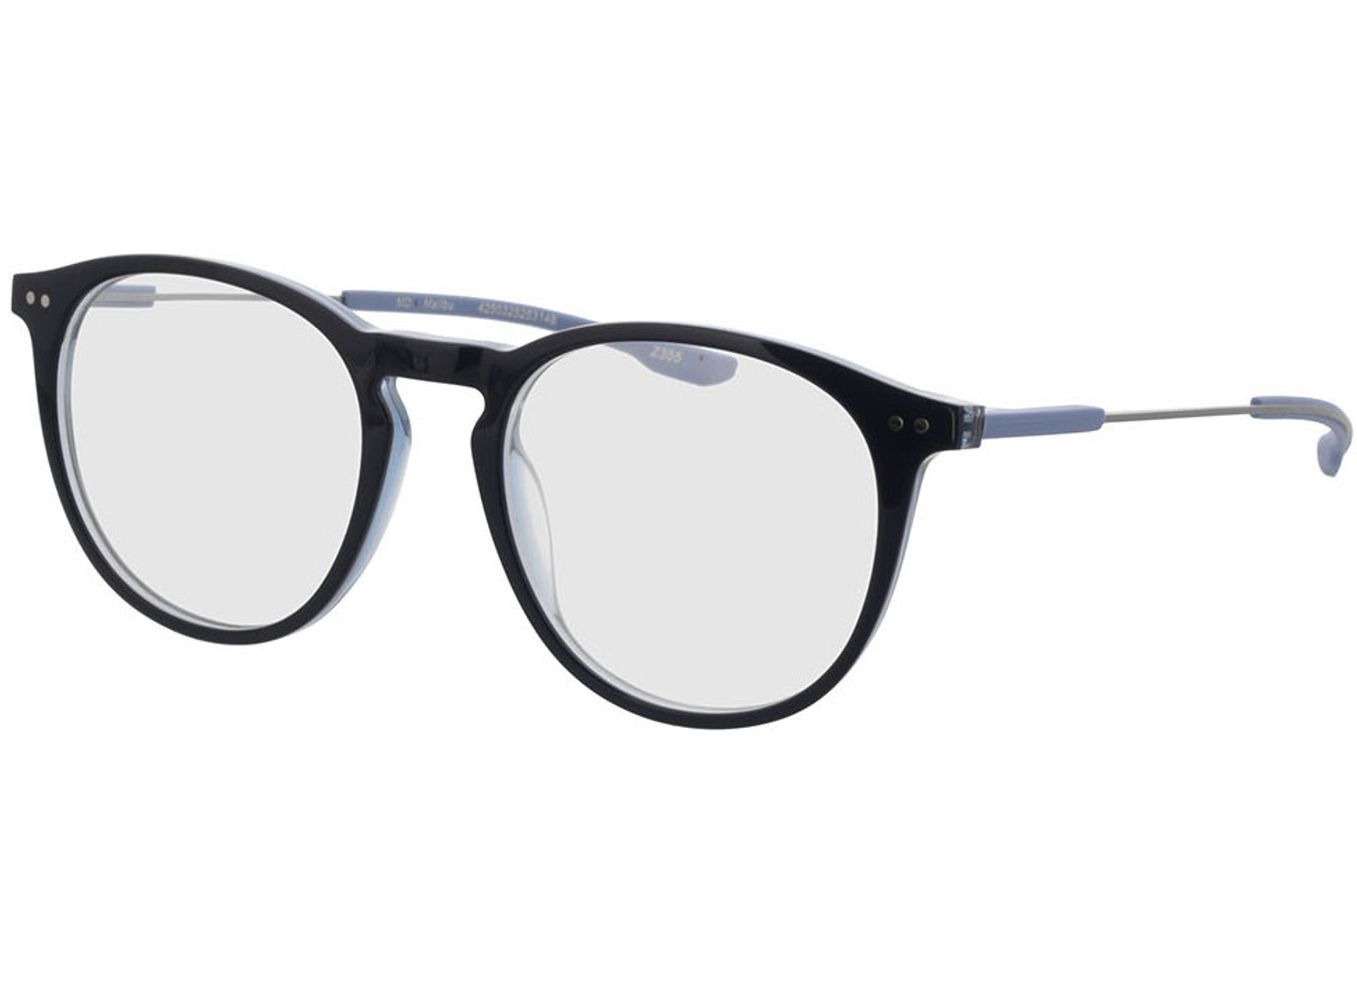 Malibu - blau Gleitsichtbrille, Vollrand, Rund von Brille24 Collection